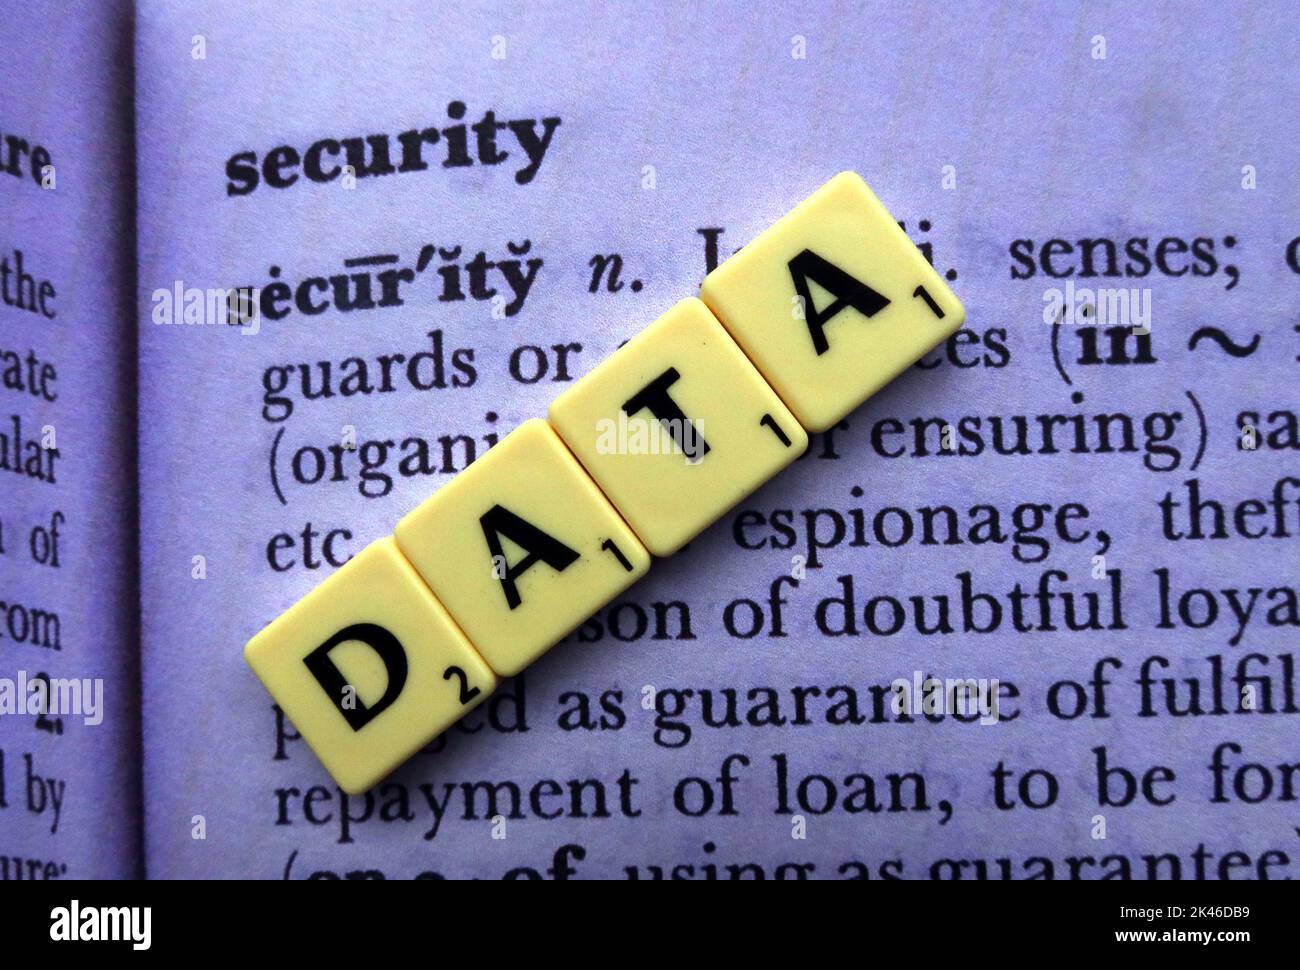 Seguridad de datos, escrita en Scrabble Letters, en la definición de seguridad del diccionario Foto de stock